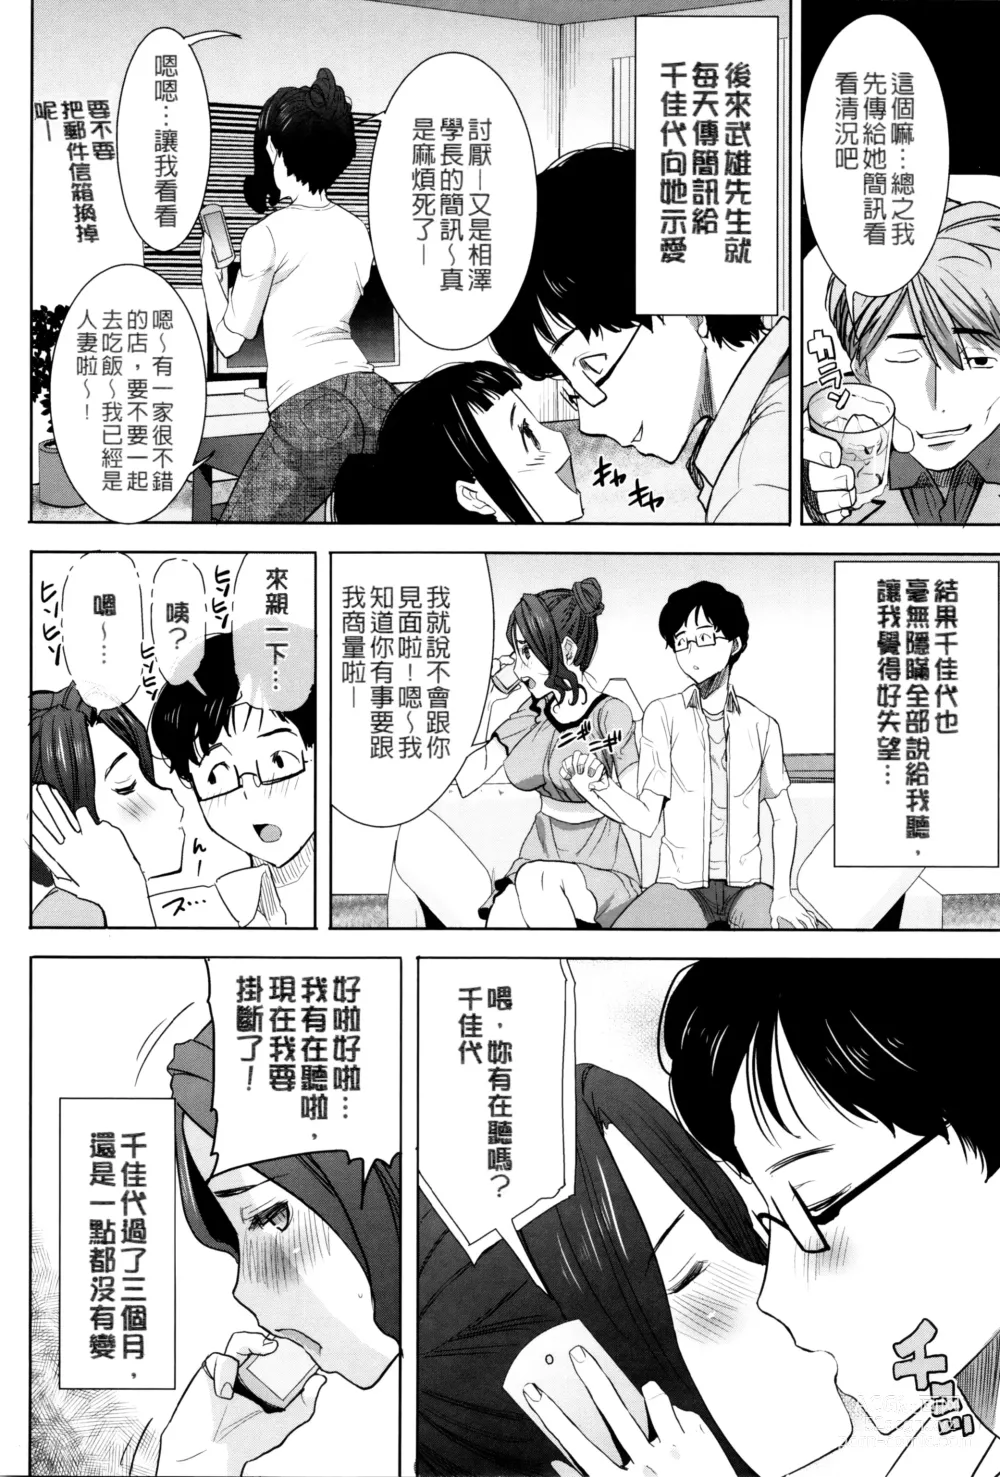 Page 9 of manga Kawaii Namaiki Tsuma Chikayo...to Motokare 1+2